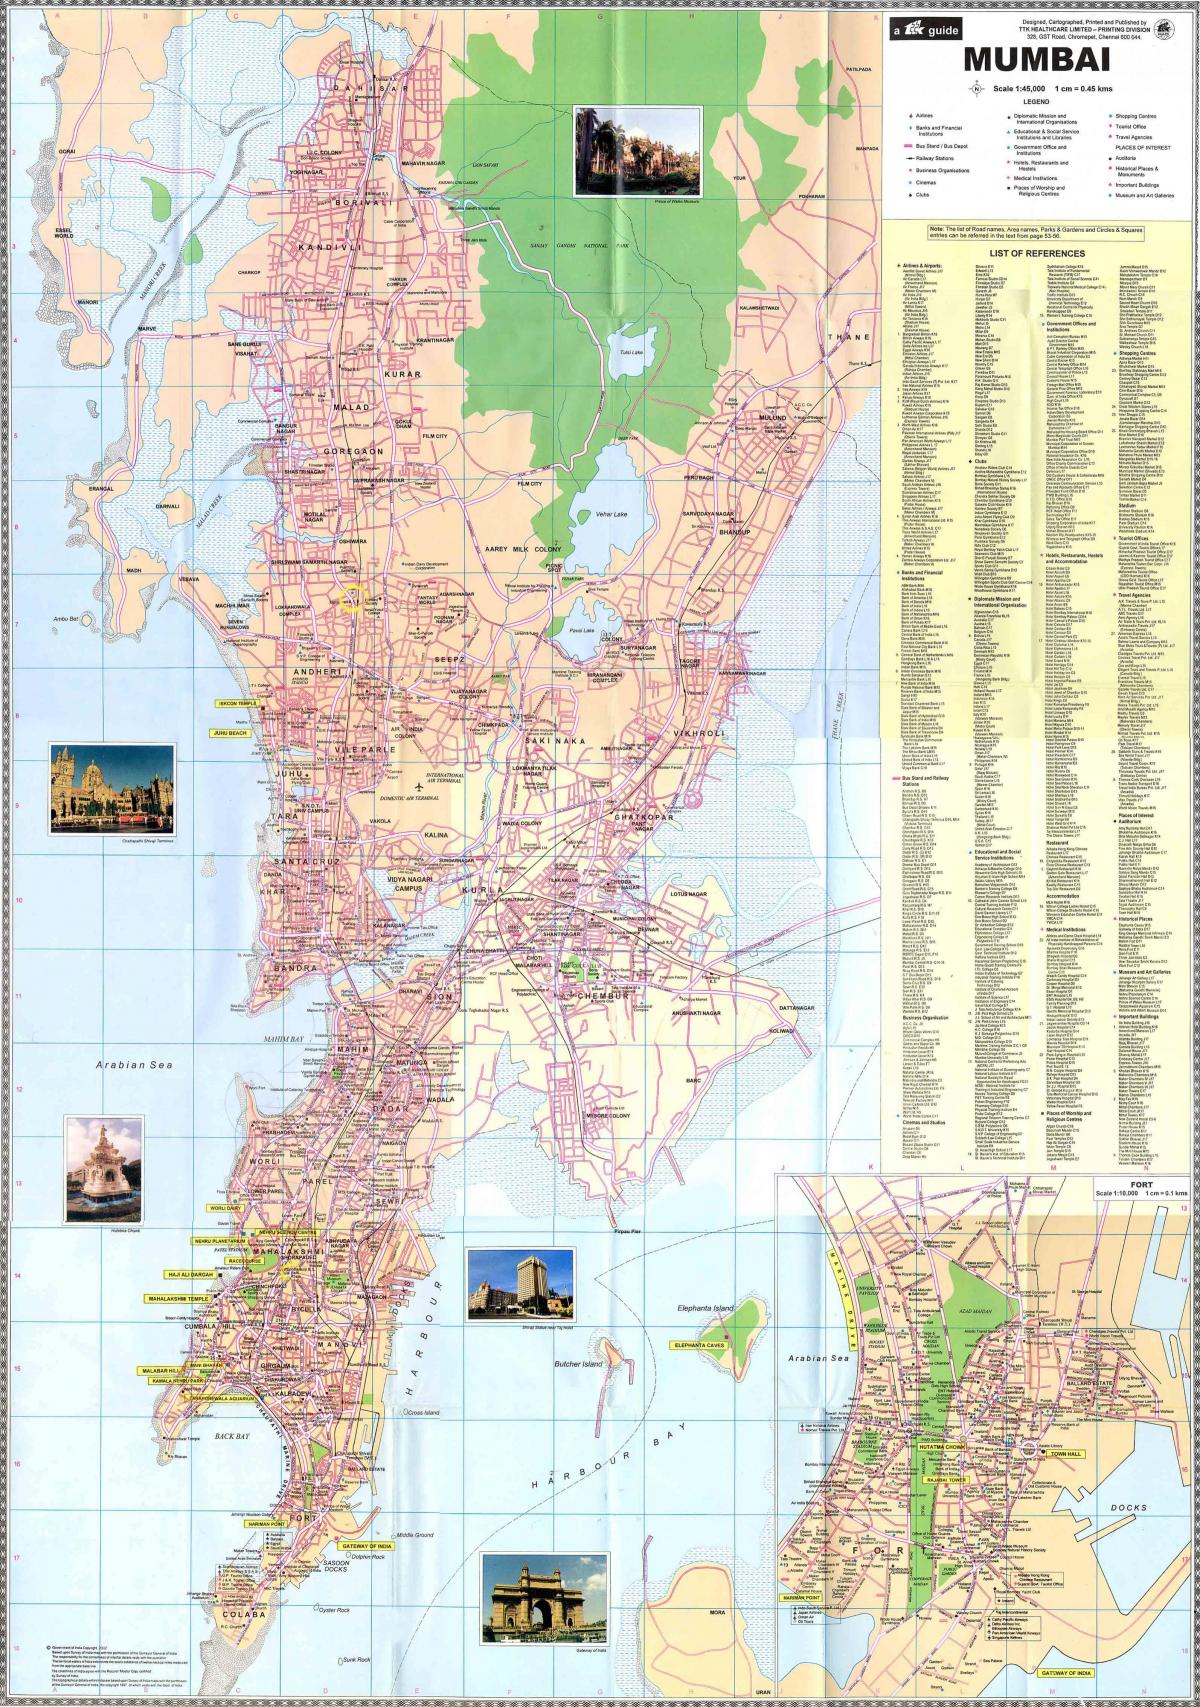 Plan du centre ville de Mumbai - Bombay